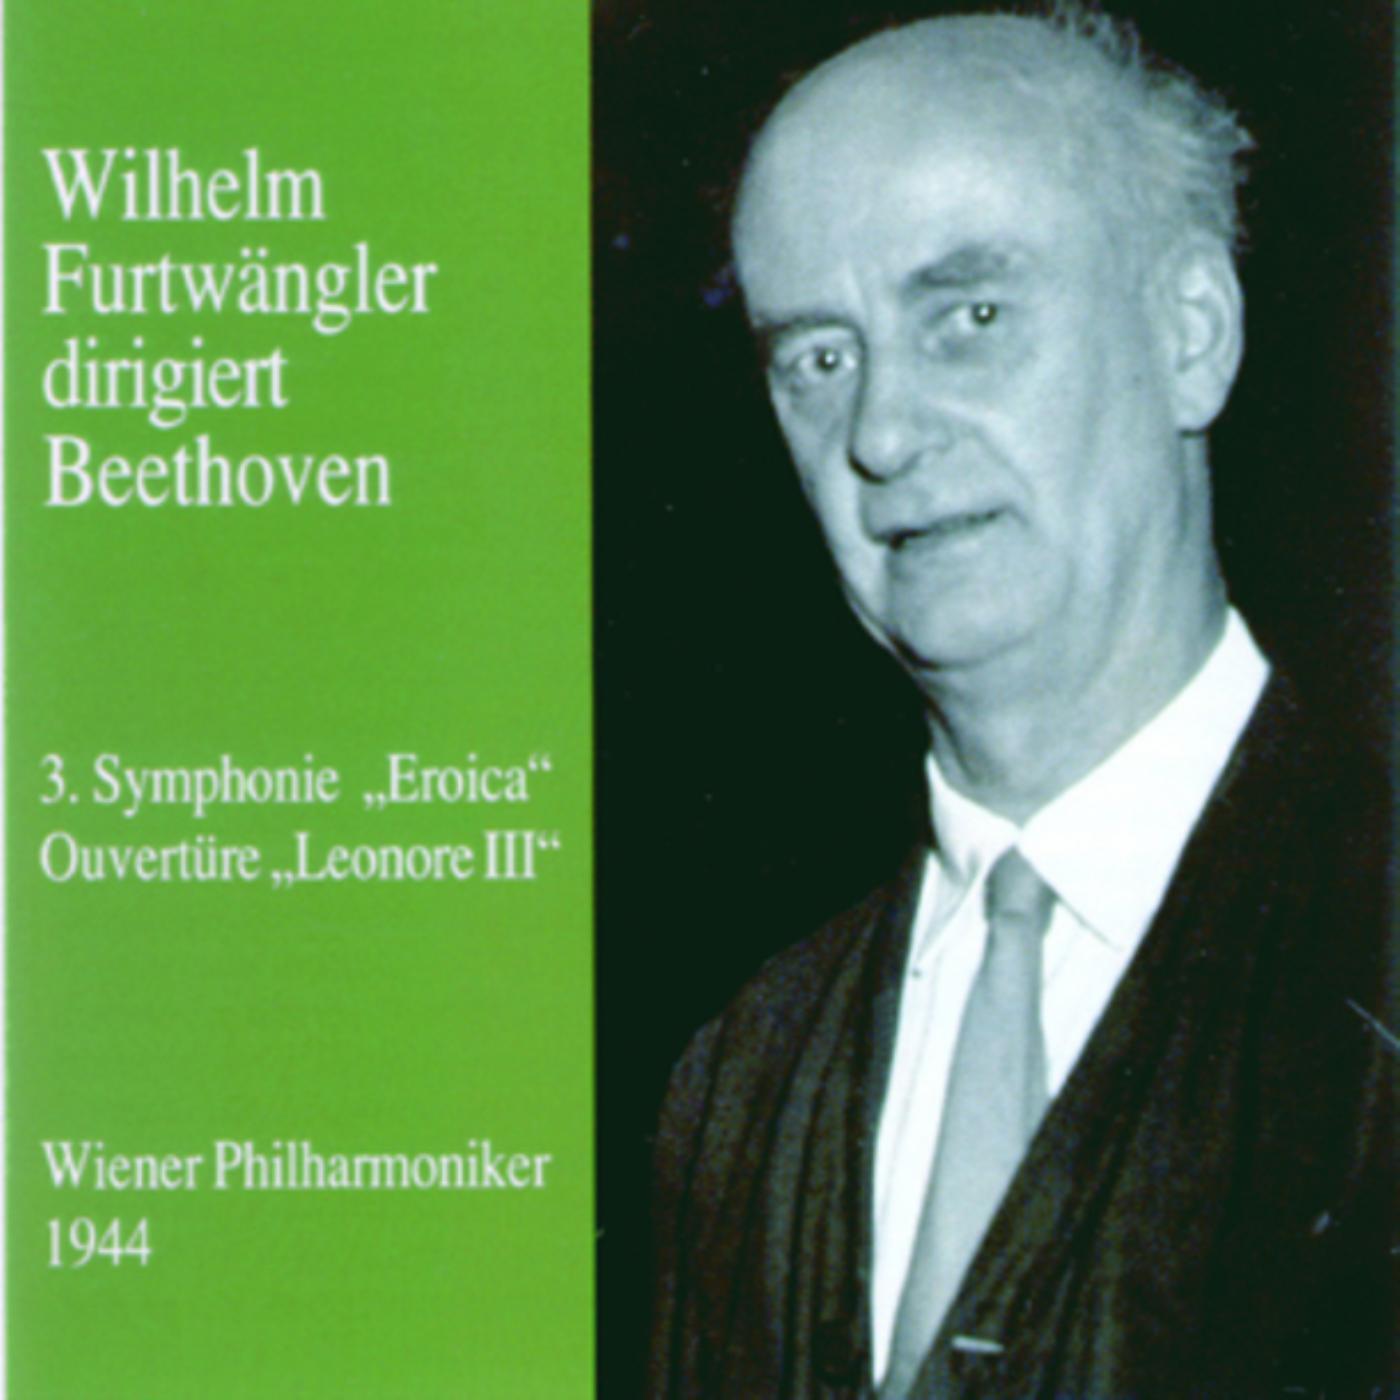 Wilhelm Furtwängler dirigiert Beethoven专辑